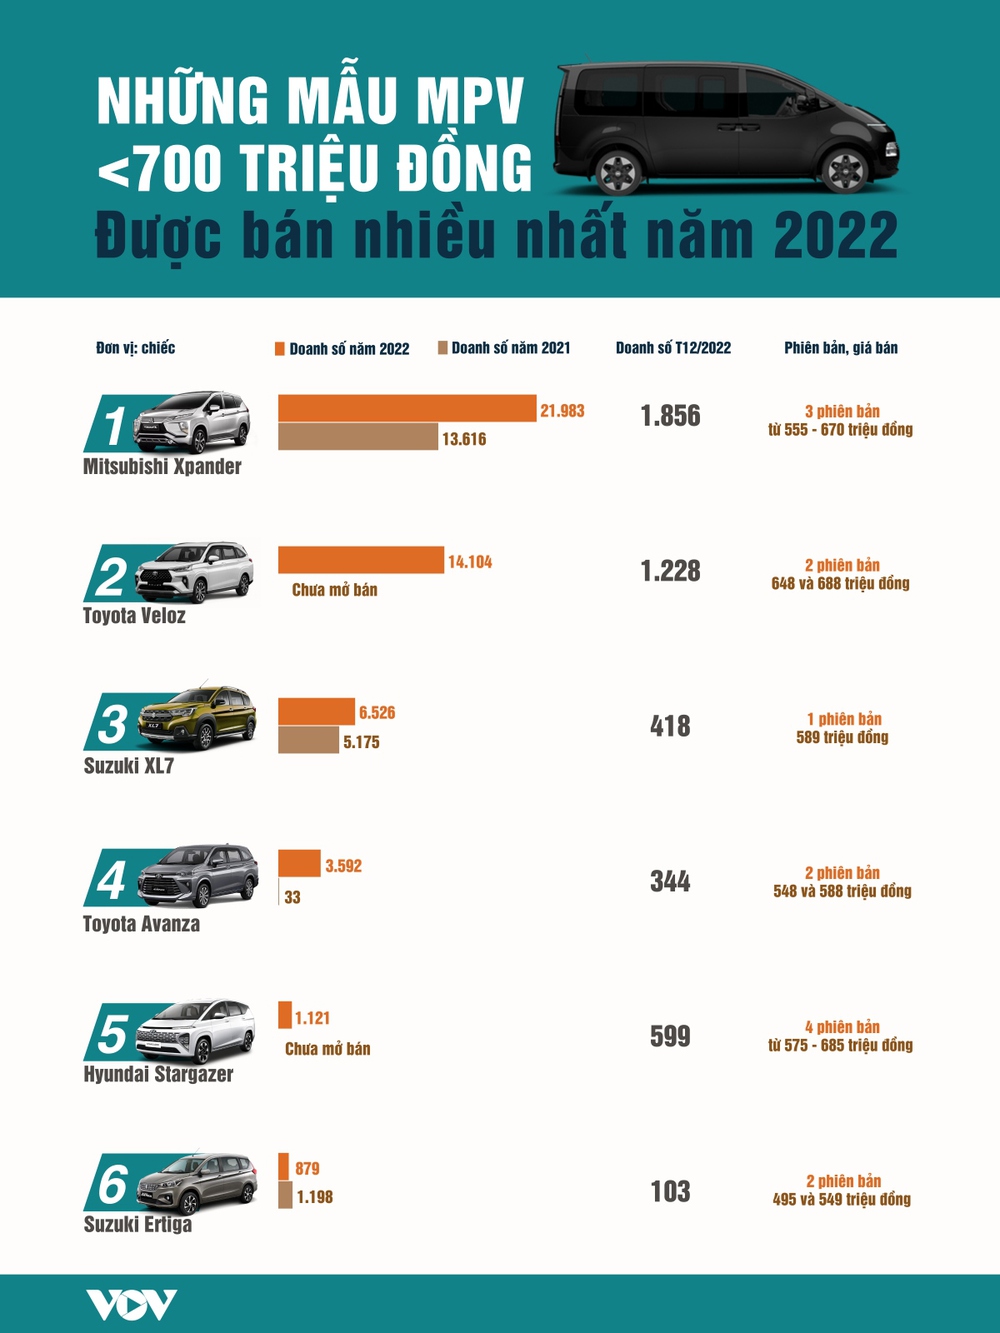 Xe MPV dưới 700 triệu đồng nào được người Việt tin dùng nhất năm 2022? - Ảnh 1.